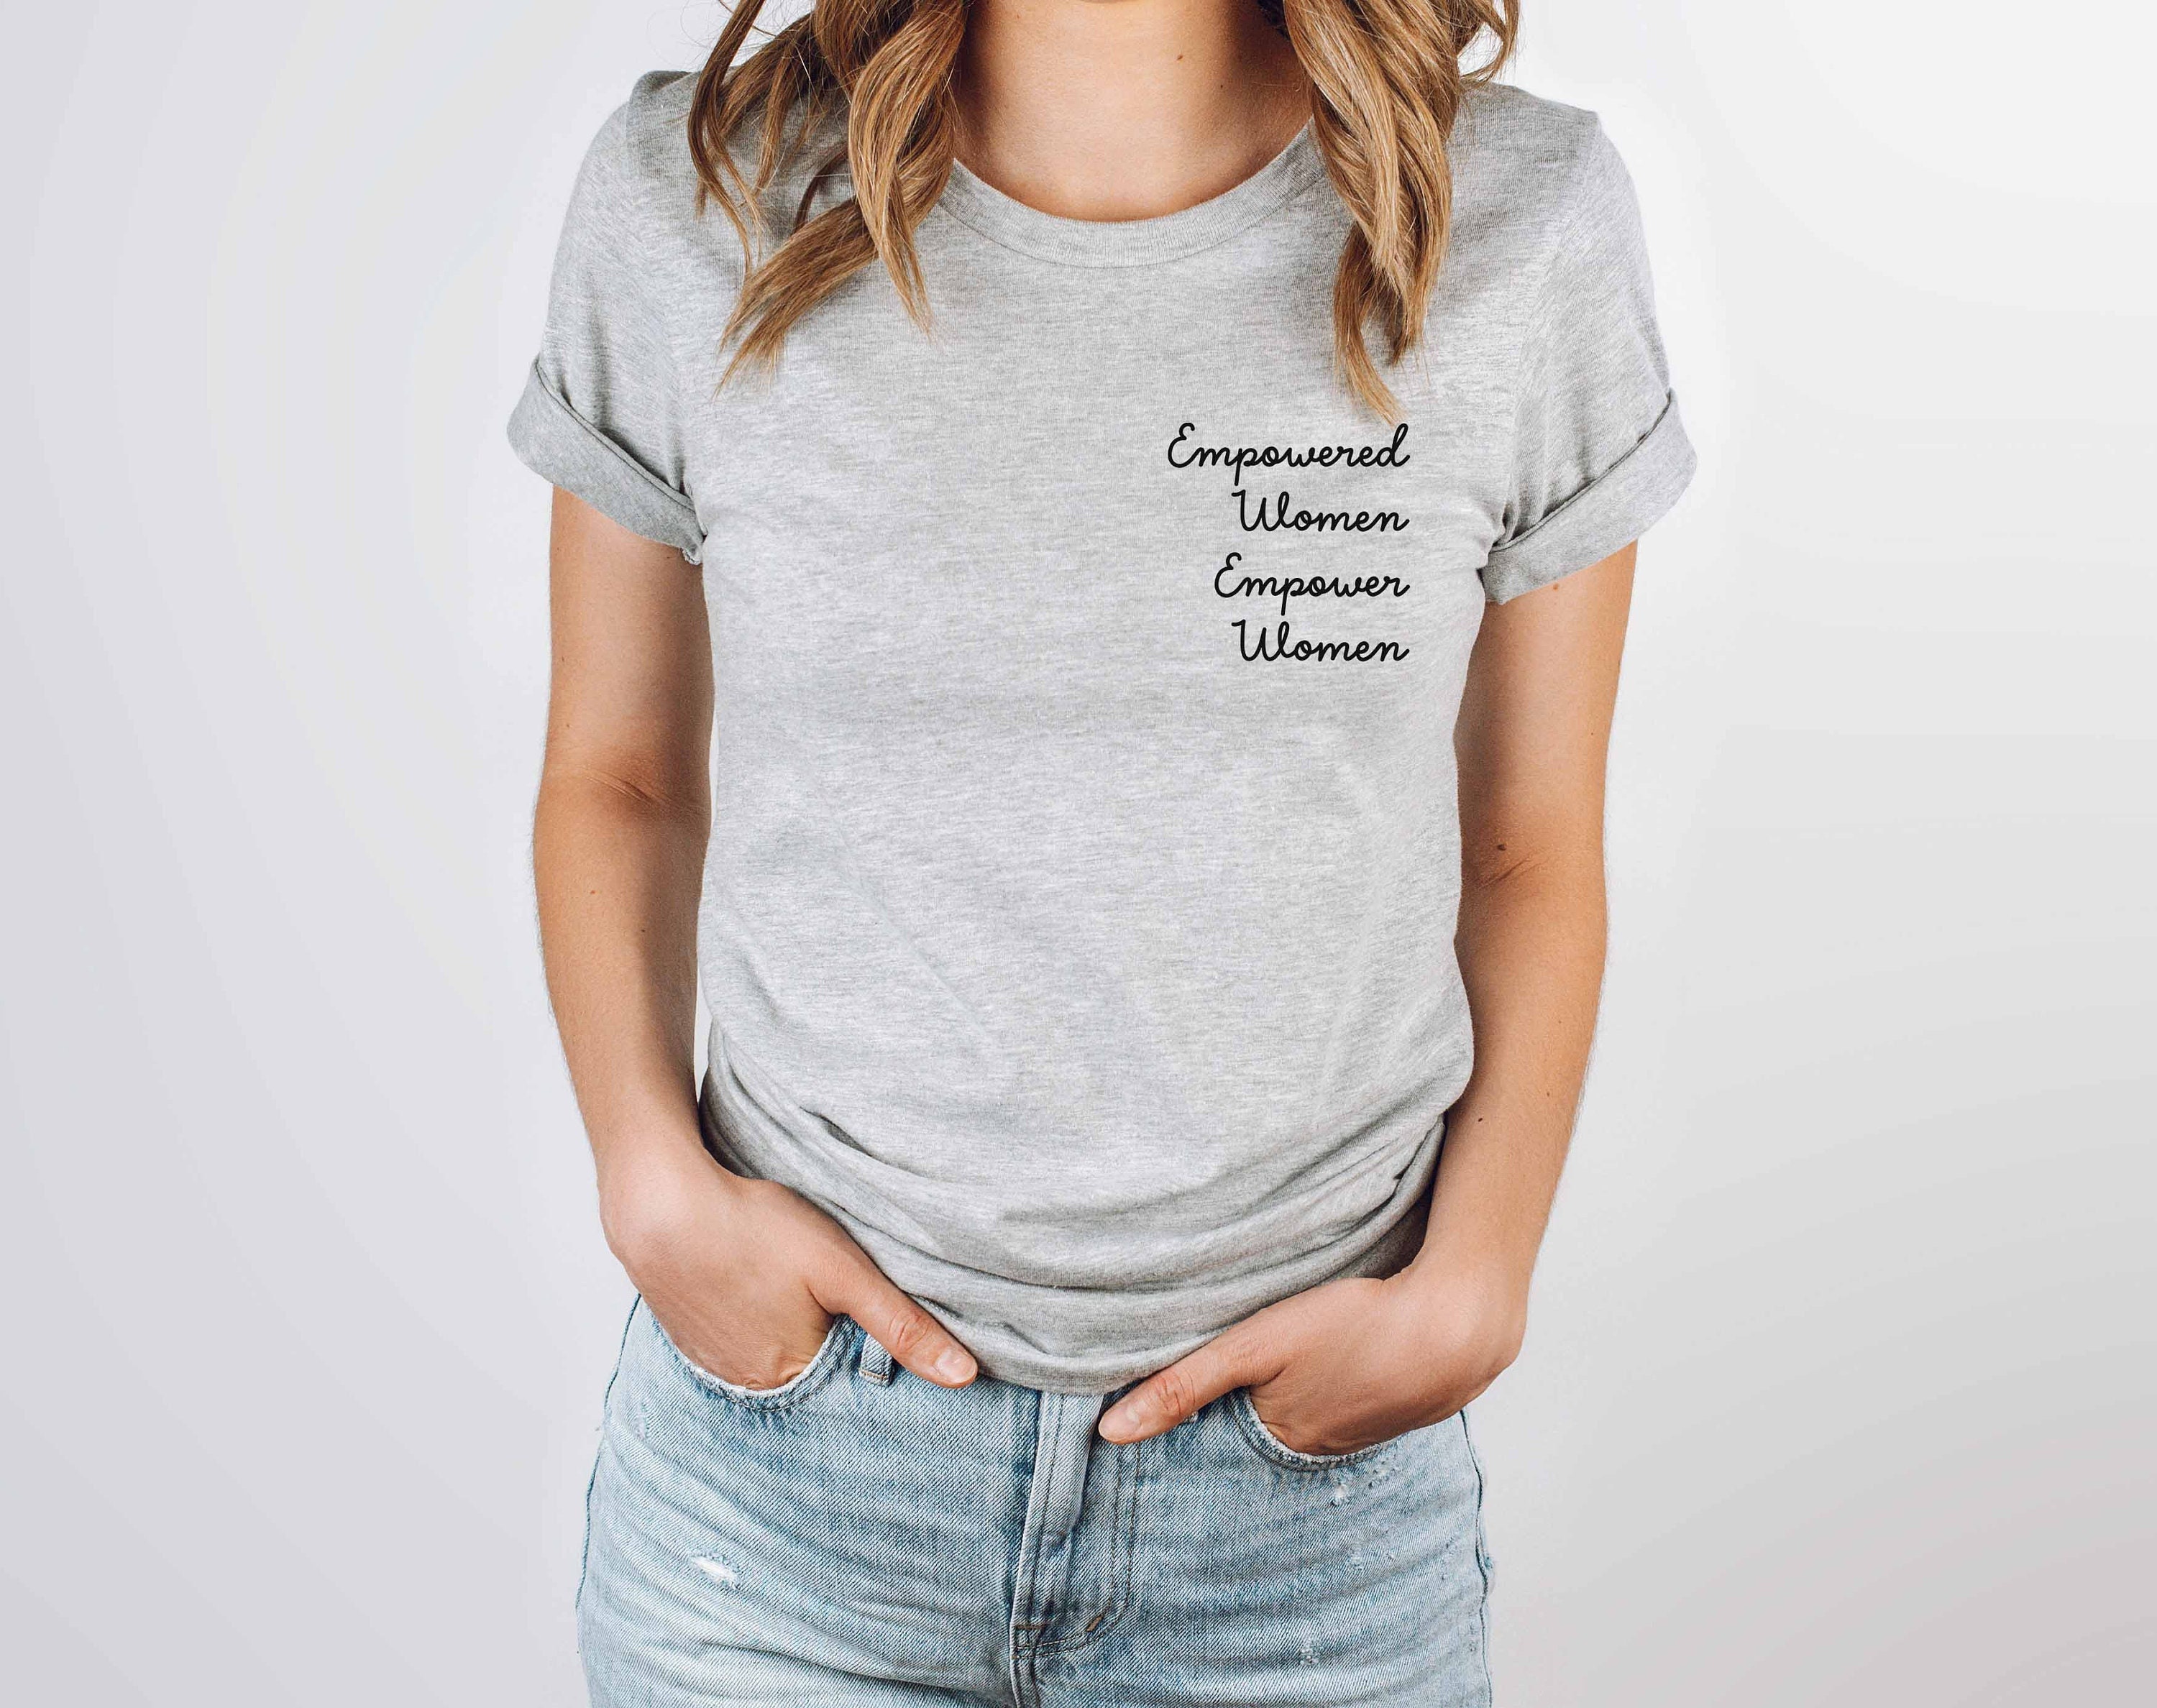 Empowered Women Empower Women's Statement T-shirt - Etsy